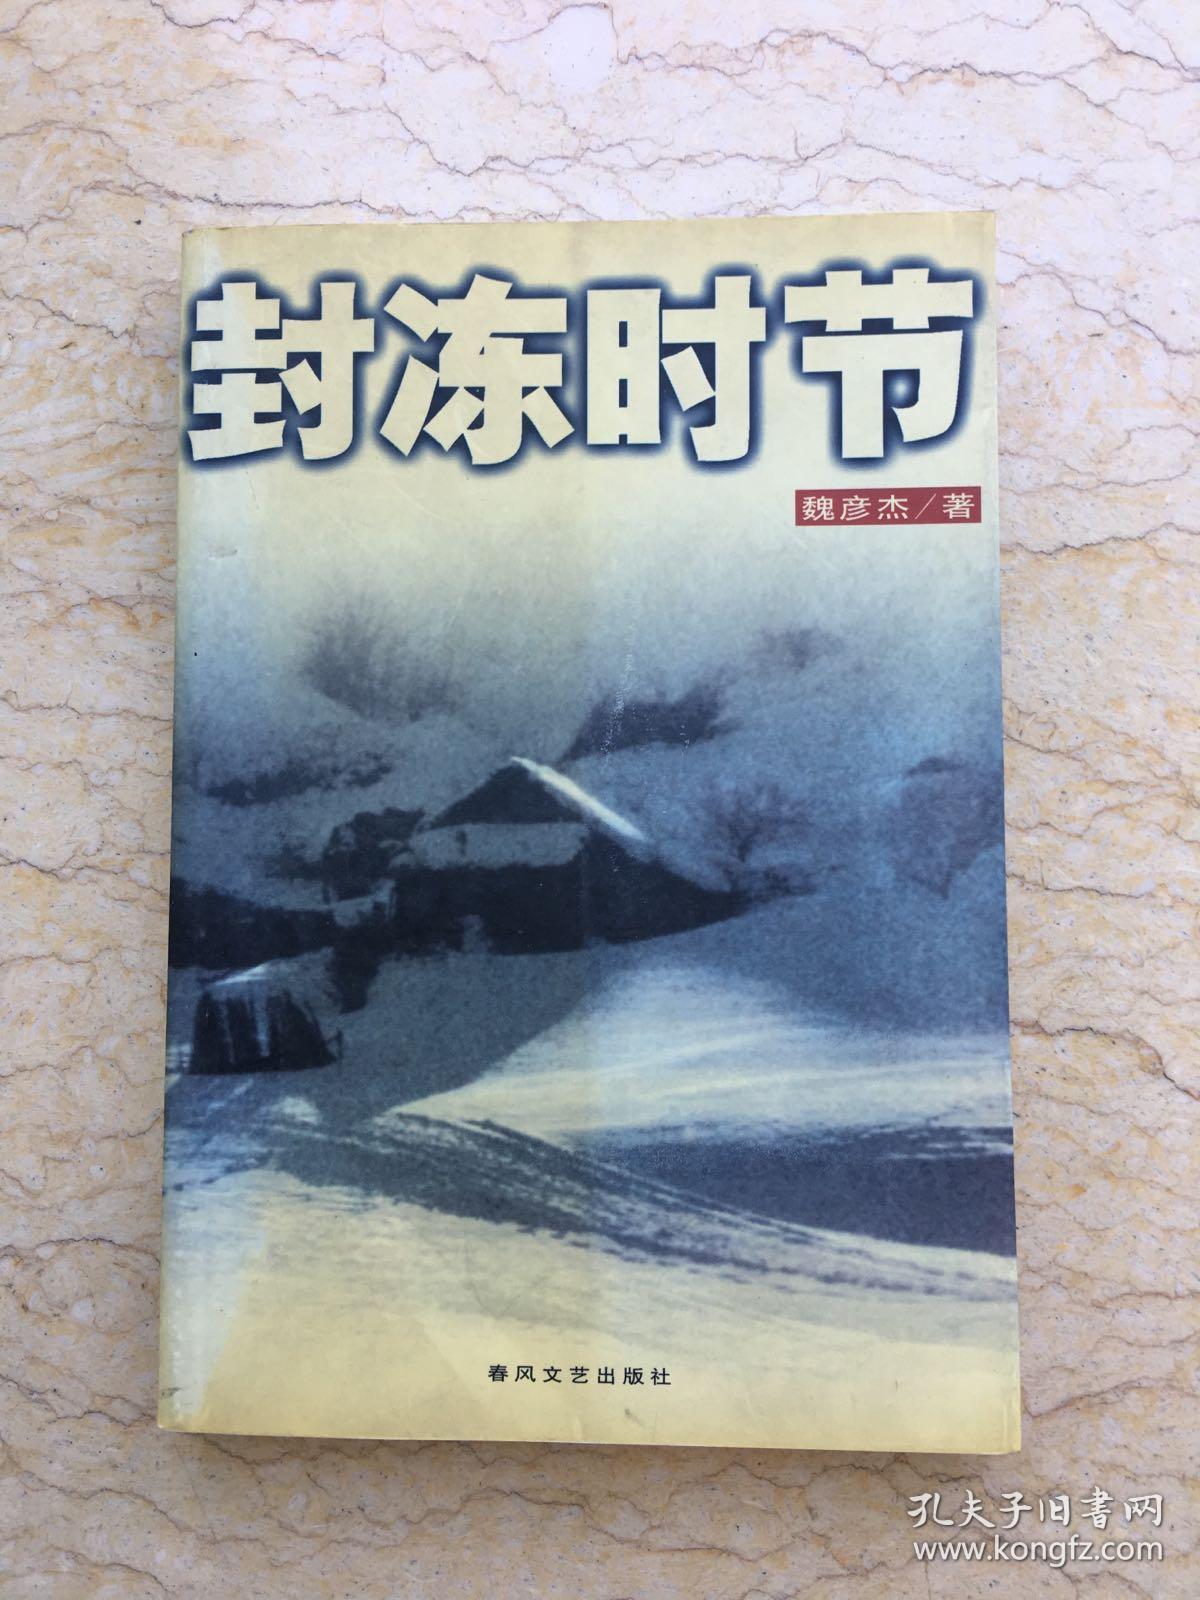 封冻时节（自传体小说）一版一印 仅印5000册 x1